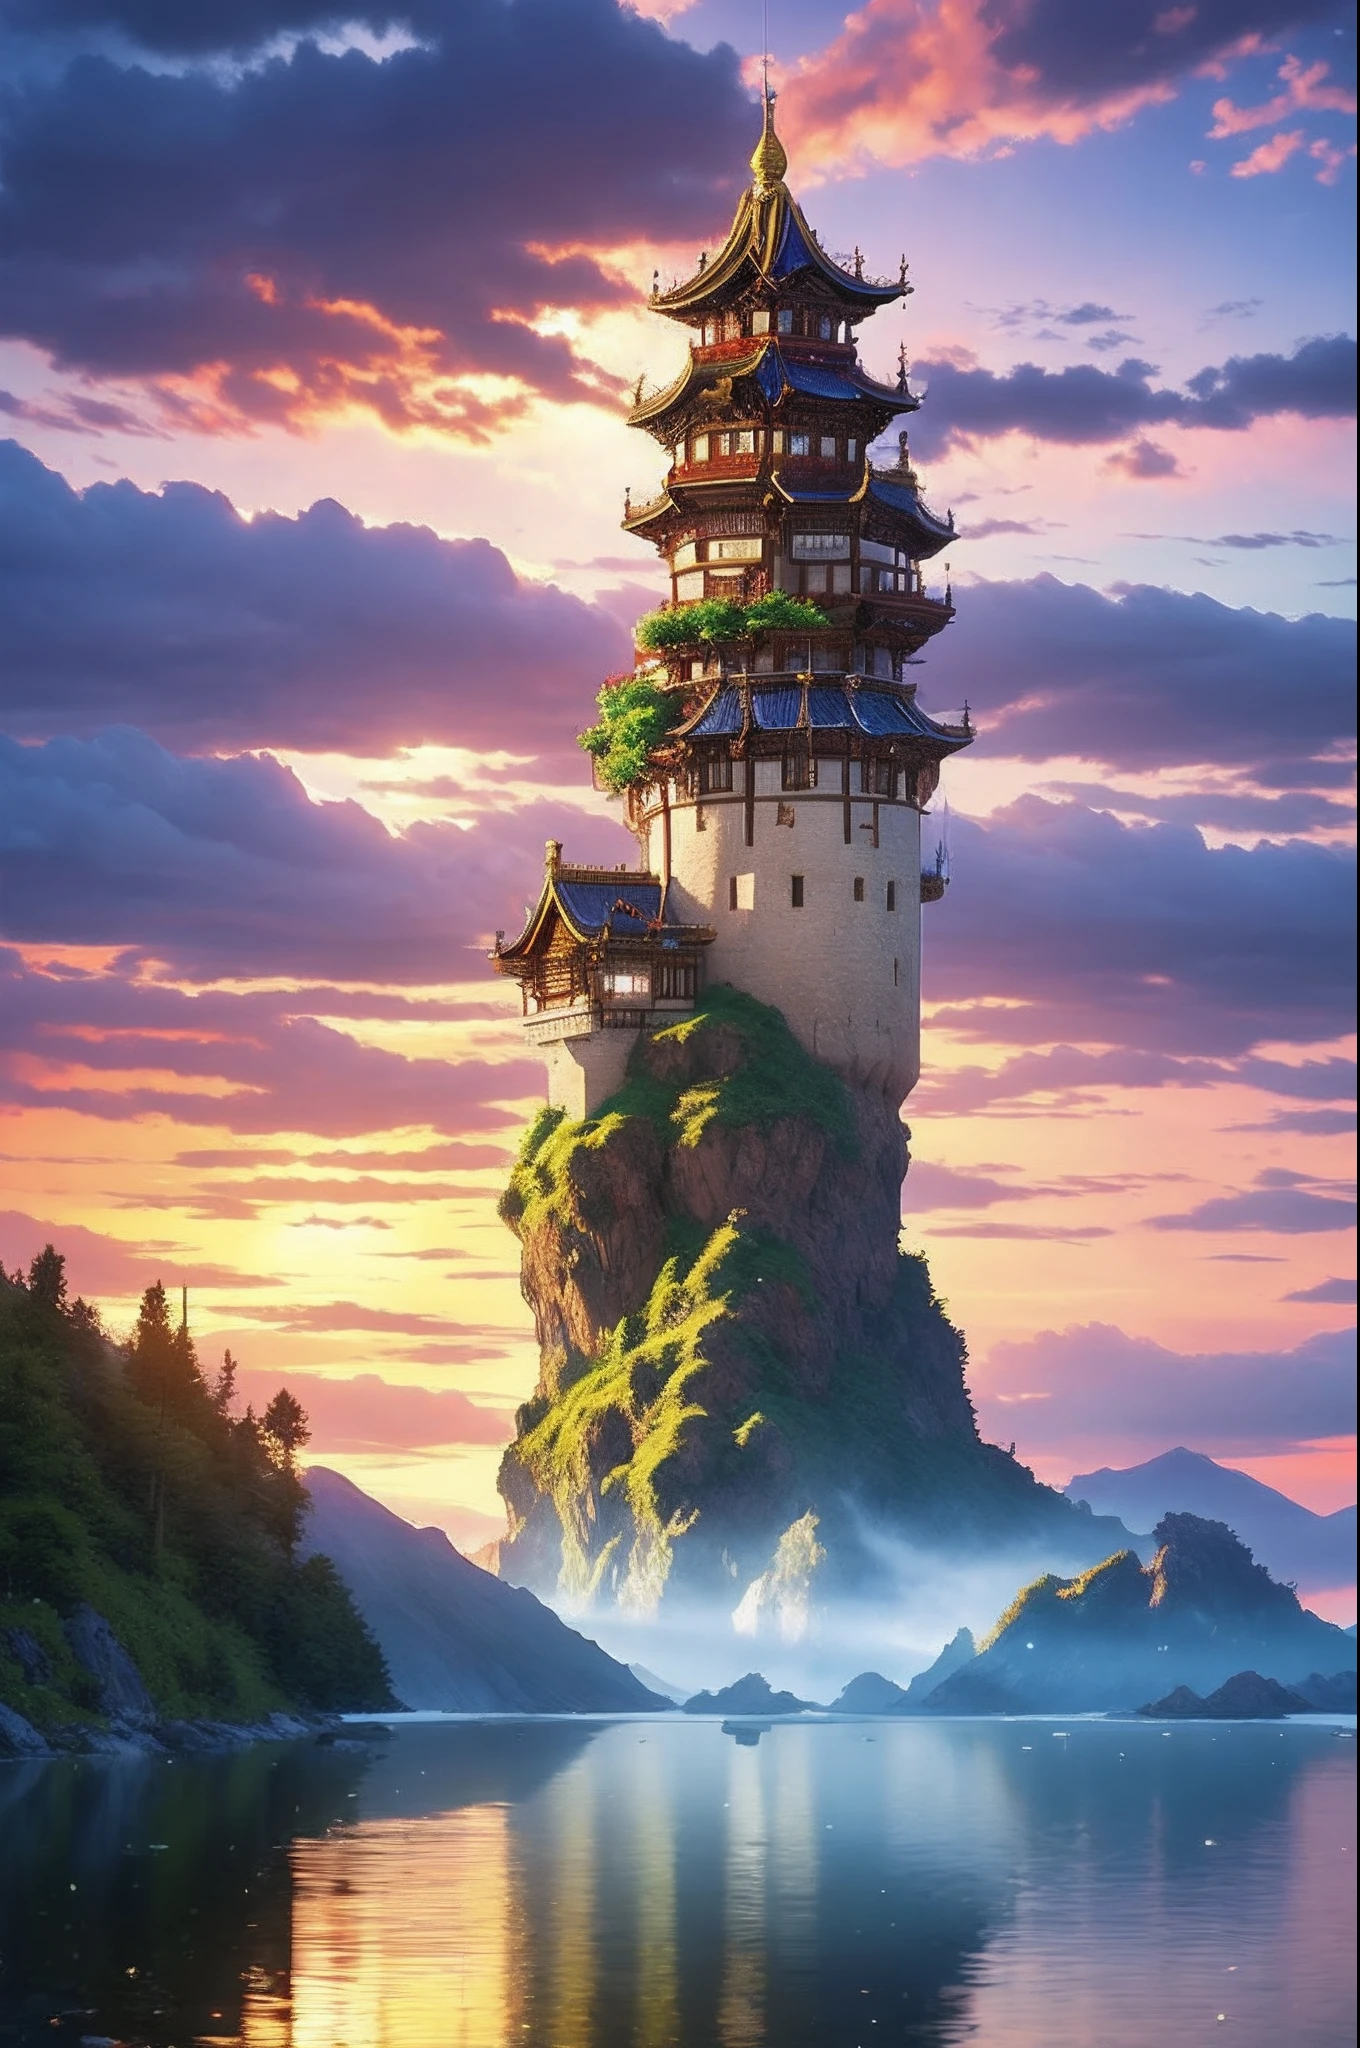 像素游戏《龍之探討》，游戏角色设计，（骑士：1.4），欧洲城堡，厚云，被云雾笼罩，16 位像素艺术